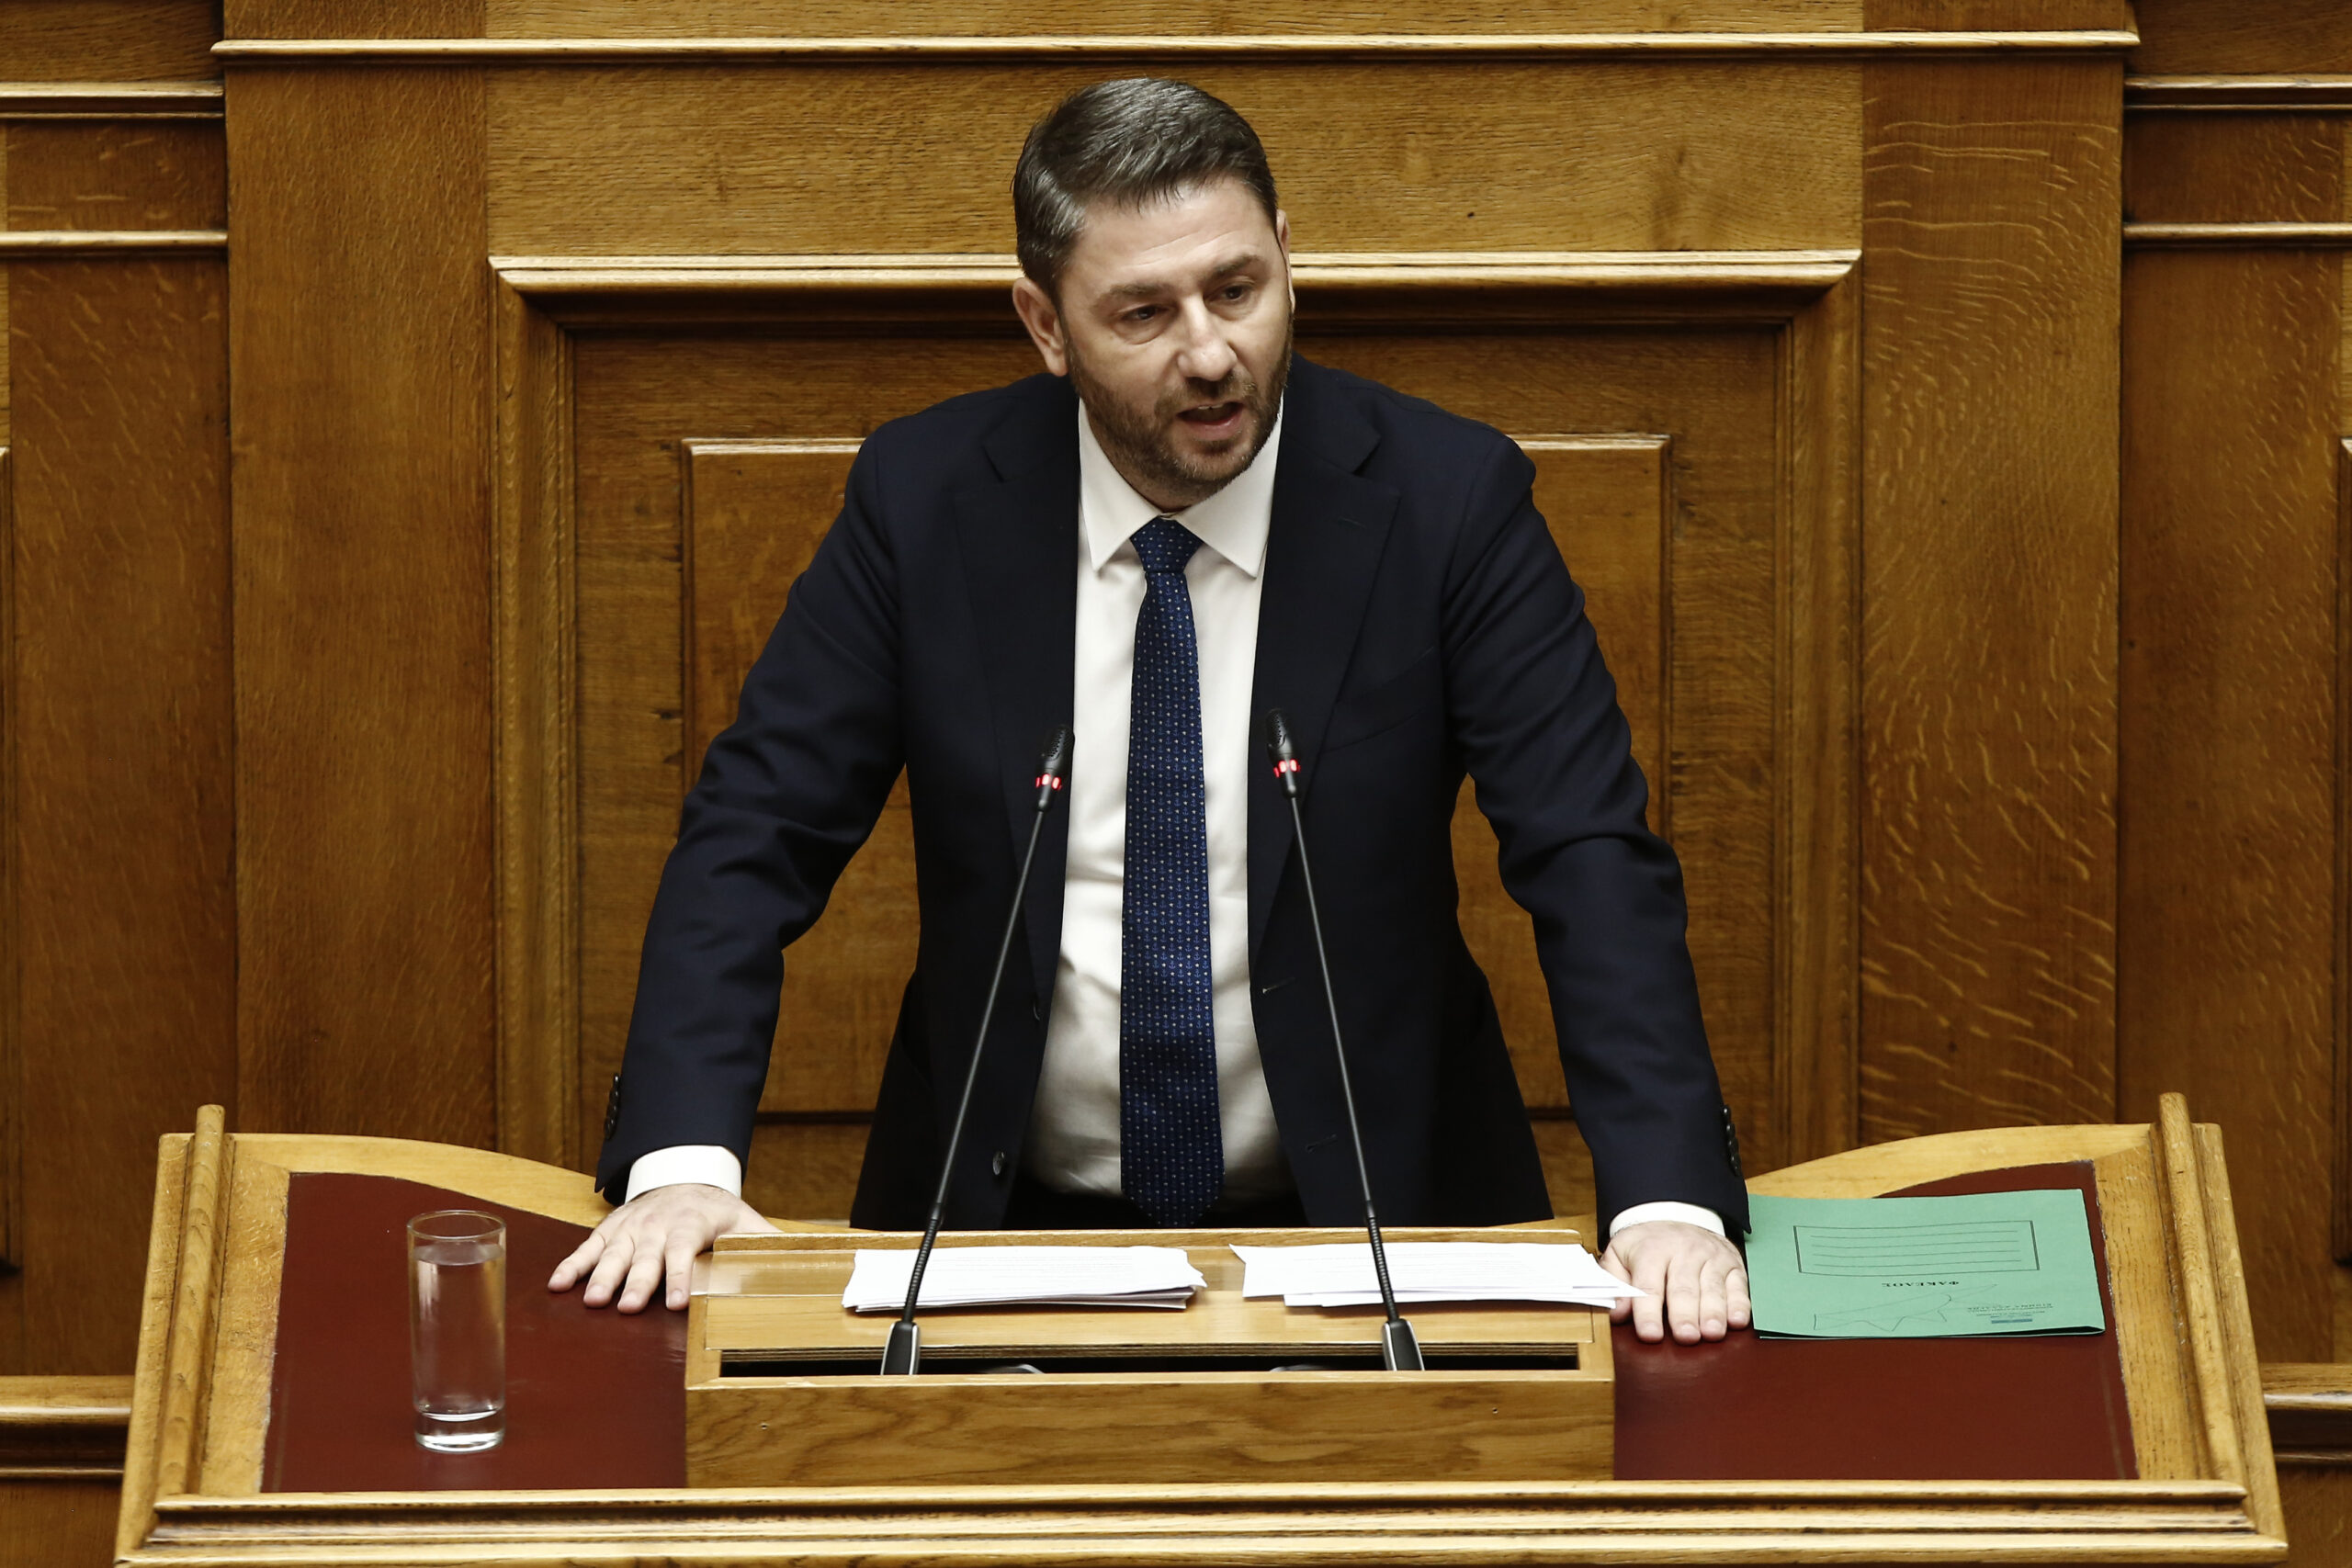 Νίκος Ανδρουλάκης: Το ΠΑΣΟΚ και η Δημοκρατική Παράταξη θα πρέπει να είναι η πρώτη επιλογή του ελληνικού λαού στις επόμενες εθνικές εκλογές